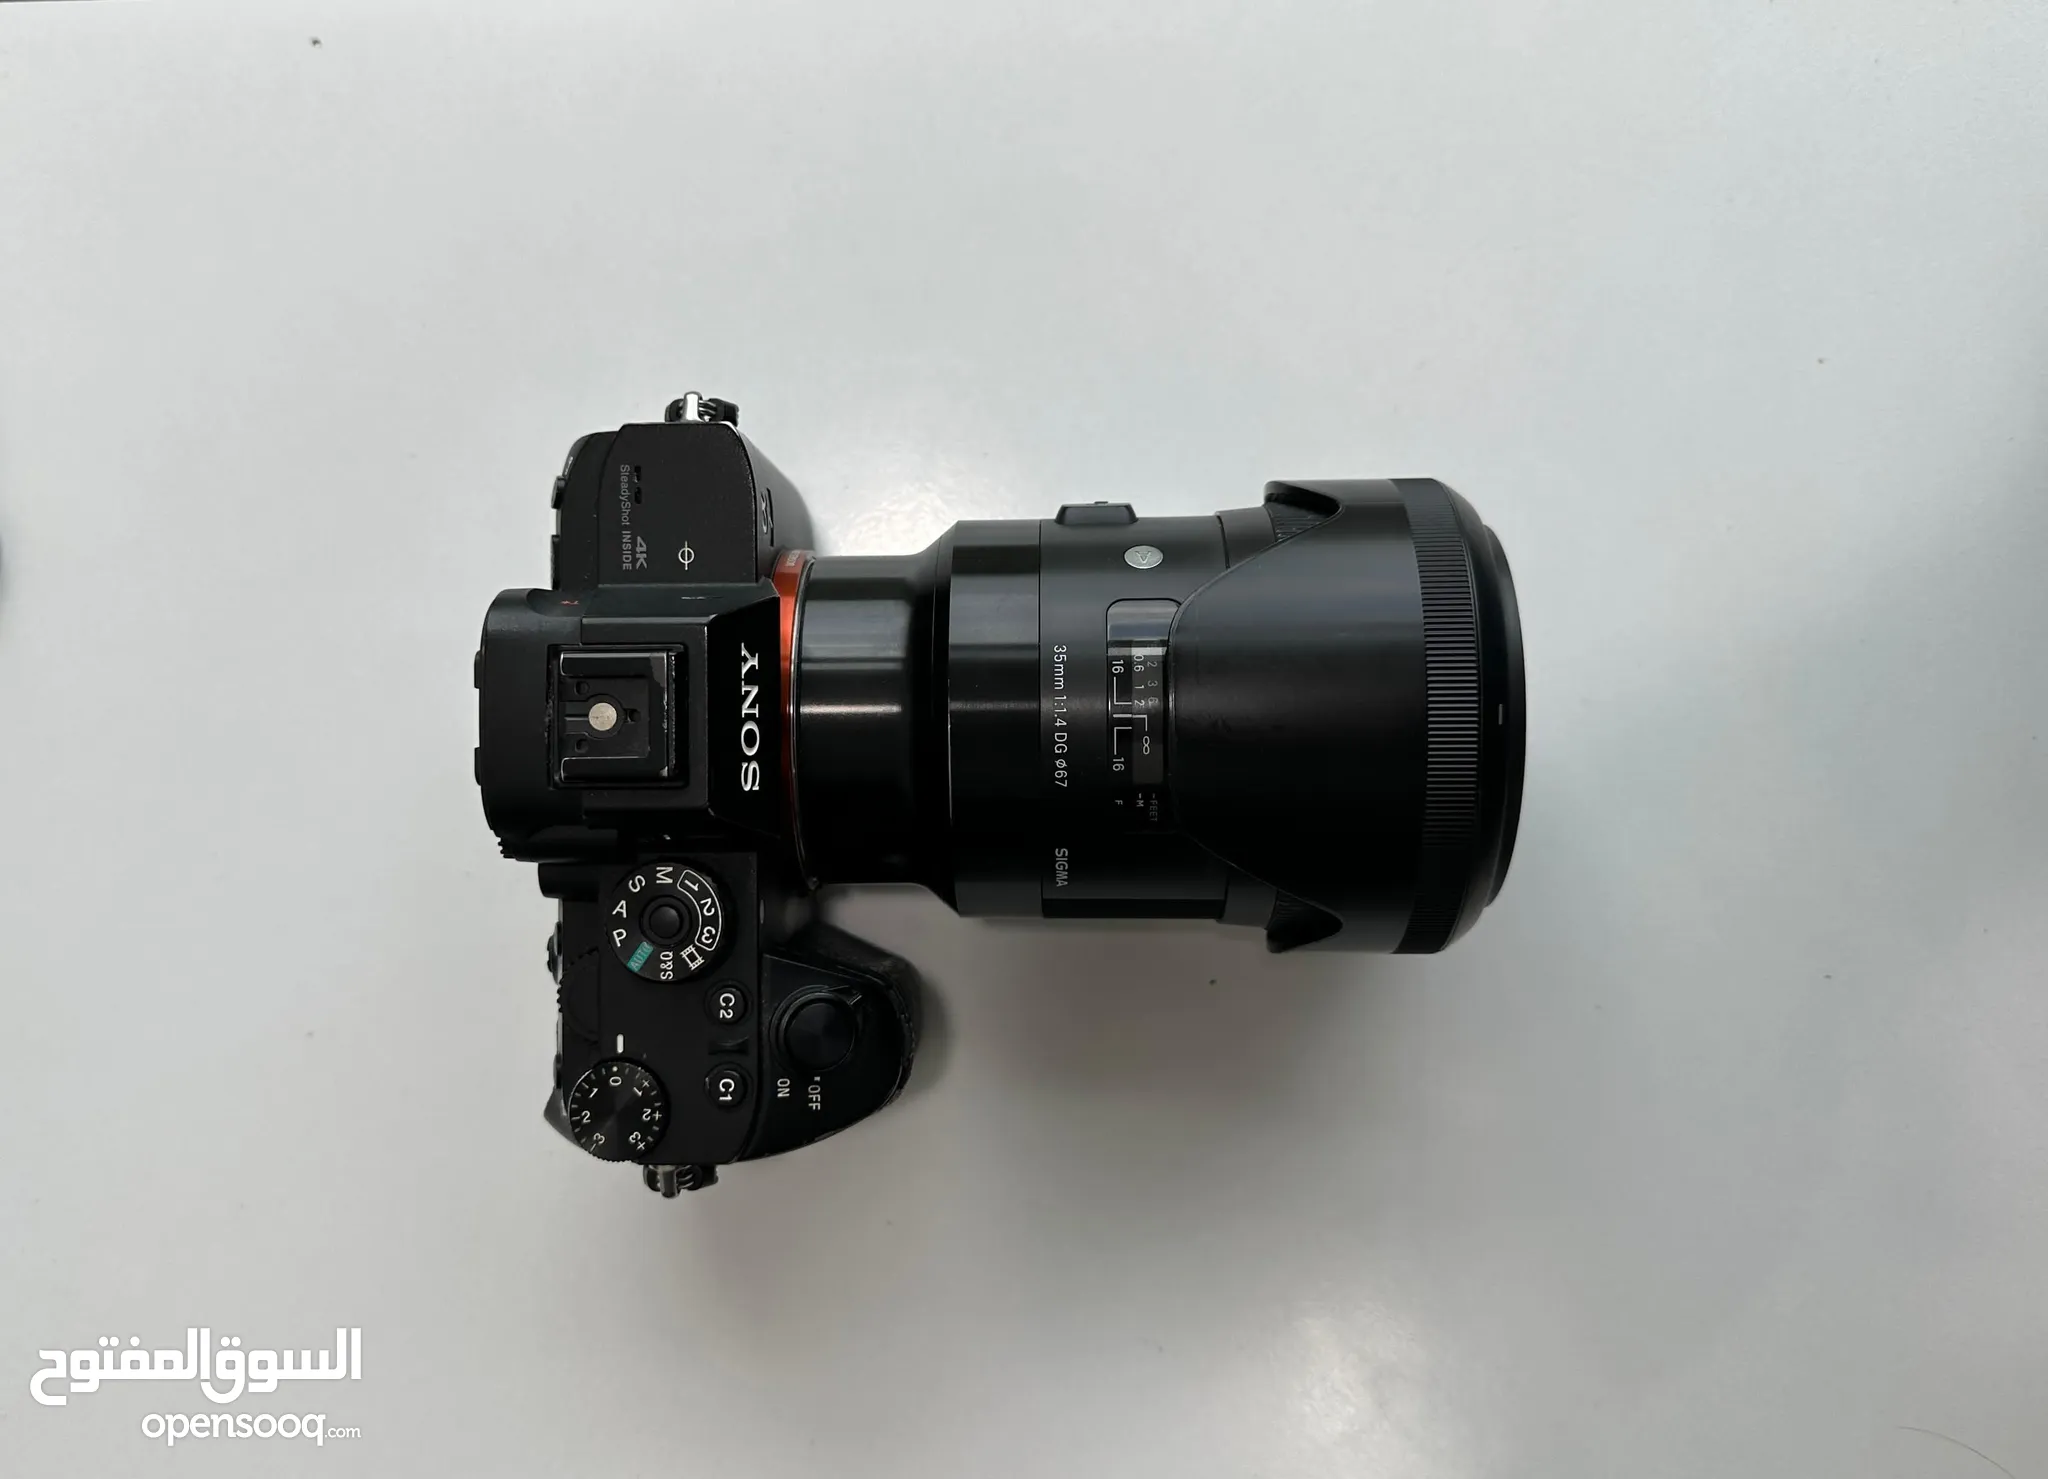 كاميرات سوني للبيع : كاميرا سوني a7iii : ZV1 : a6400 : a7c : قديمة وديجيتال  : أفضل الأسعار : دبي | السوق المفتوح